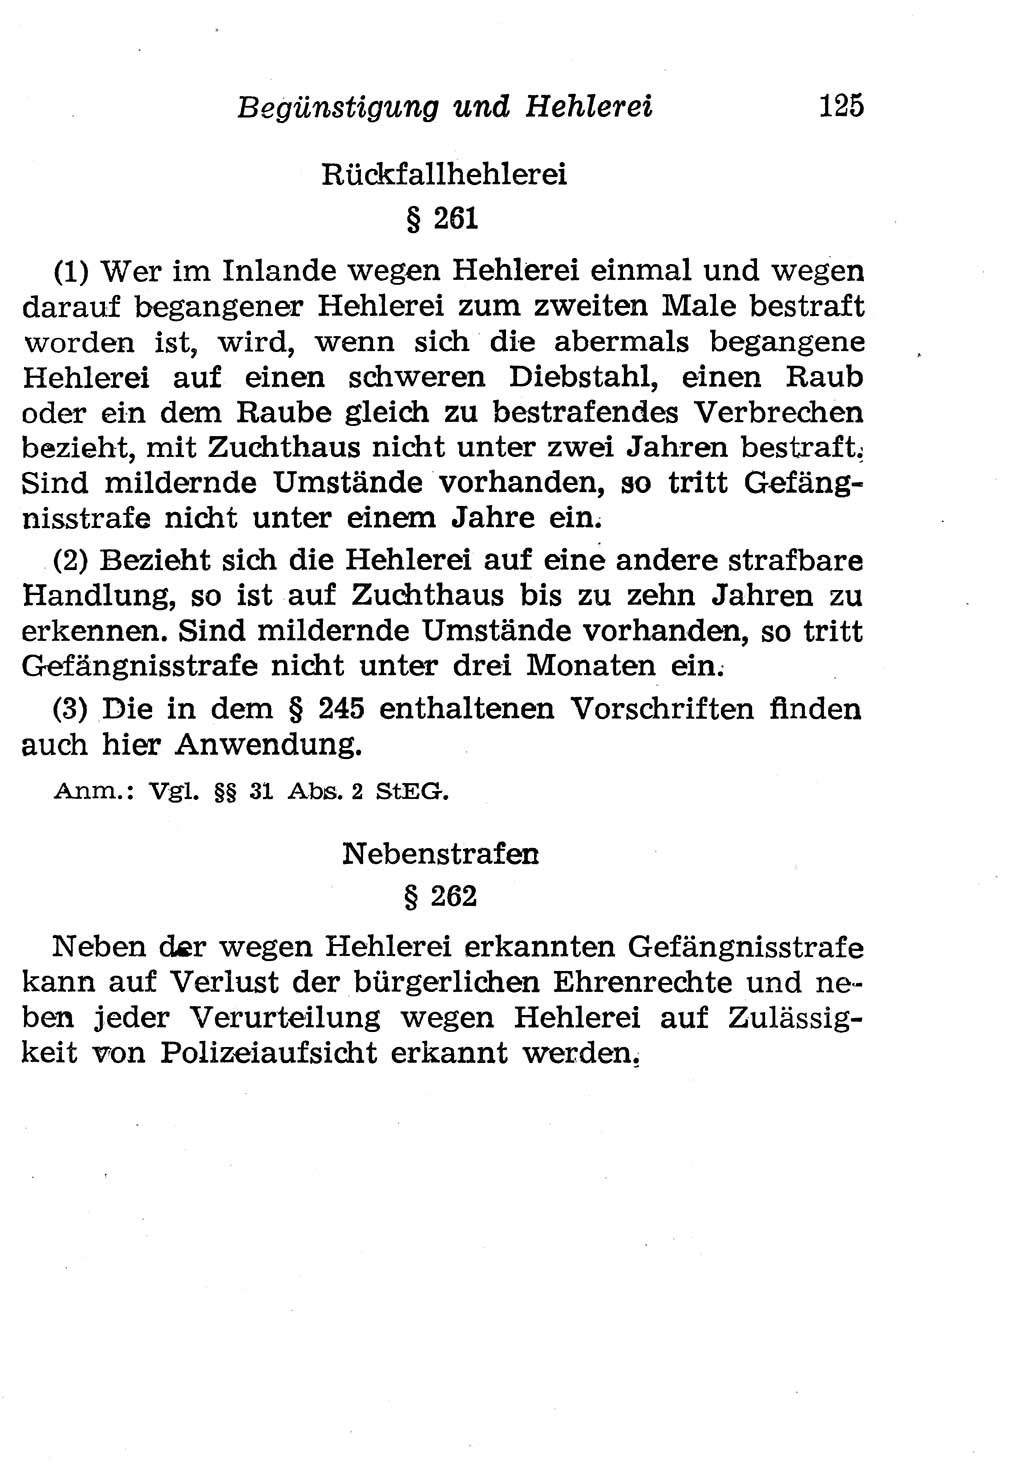 Strafgesetzbuch (StGB) und andere Strafgesetze [Deutsche Demokratische Republik (DDR)] 1958, Seite 125 (StGB Strafges. DDR 1958, S. 125)